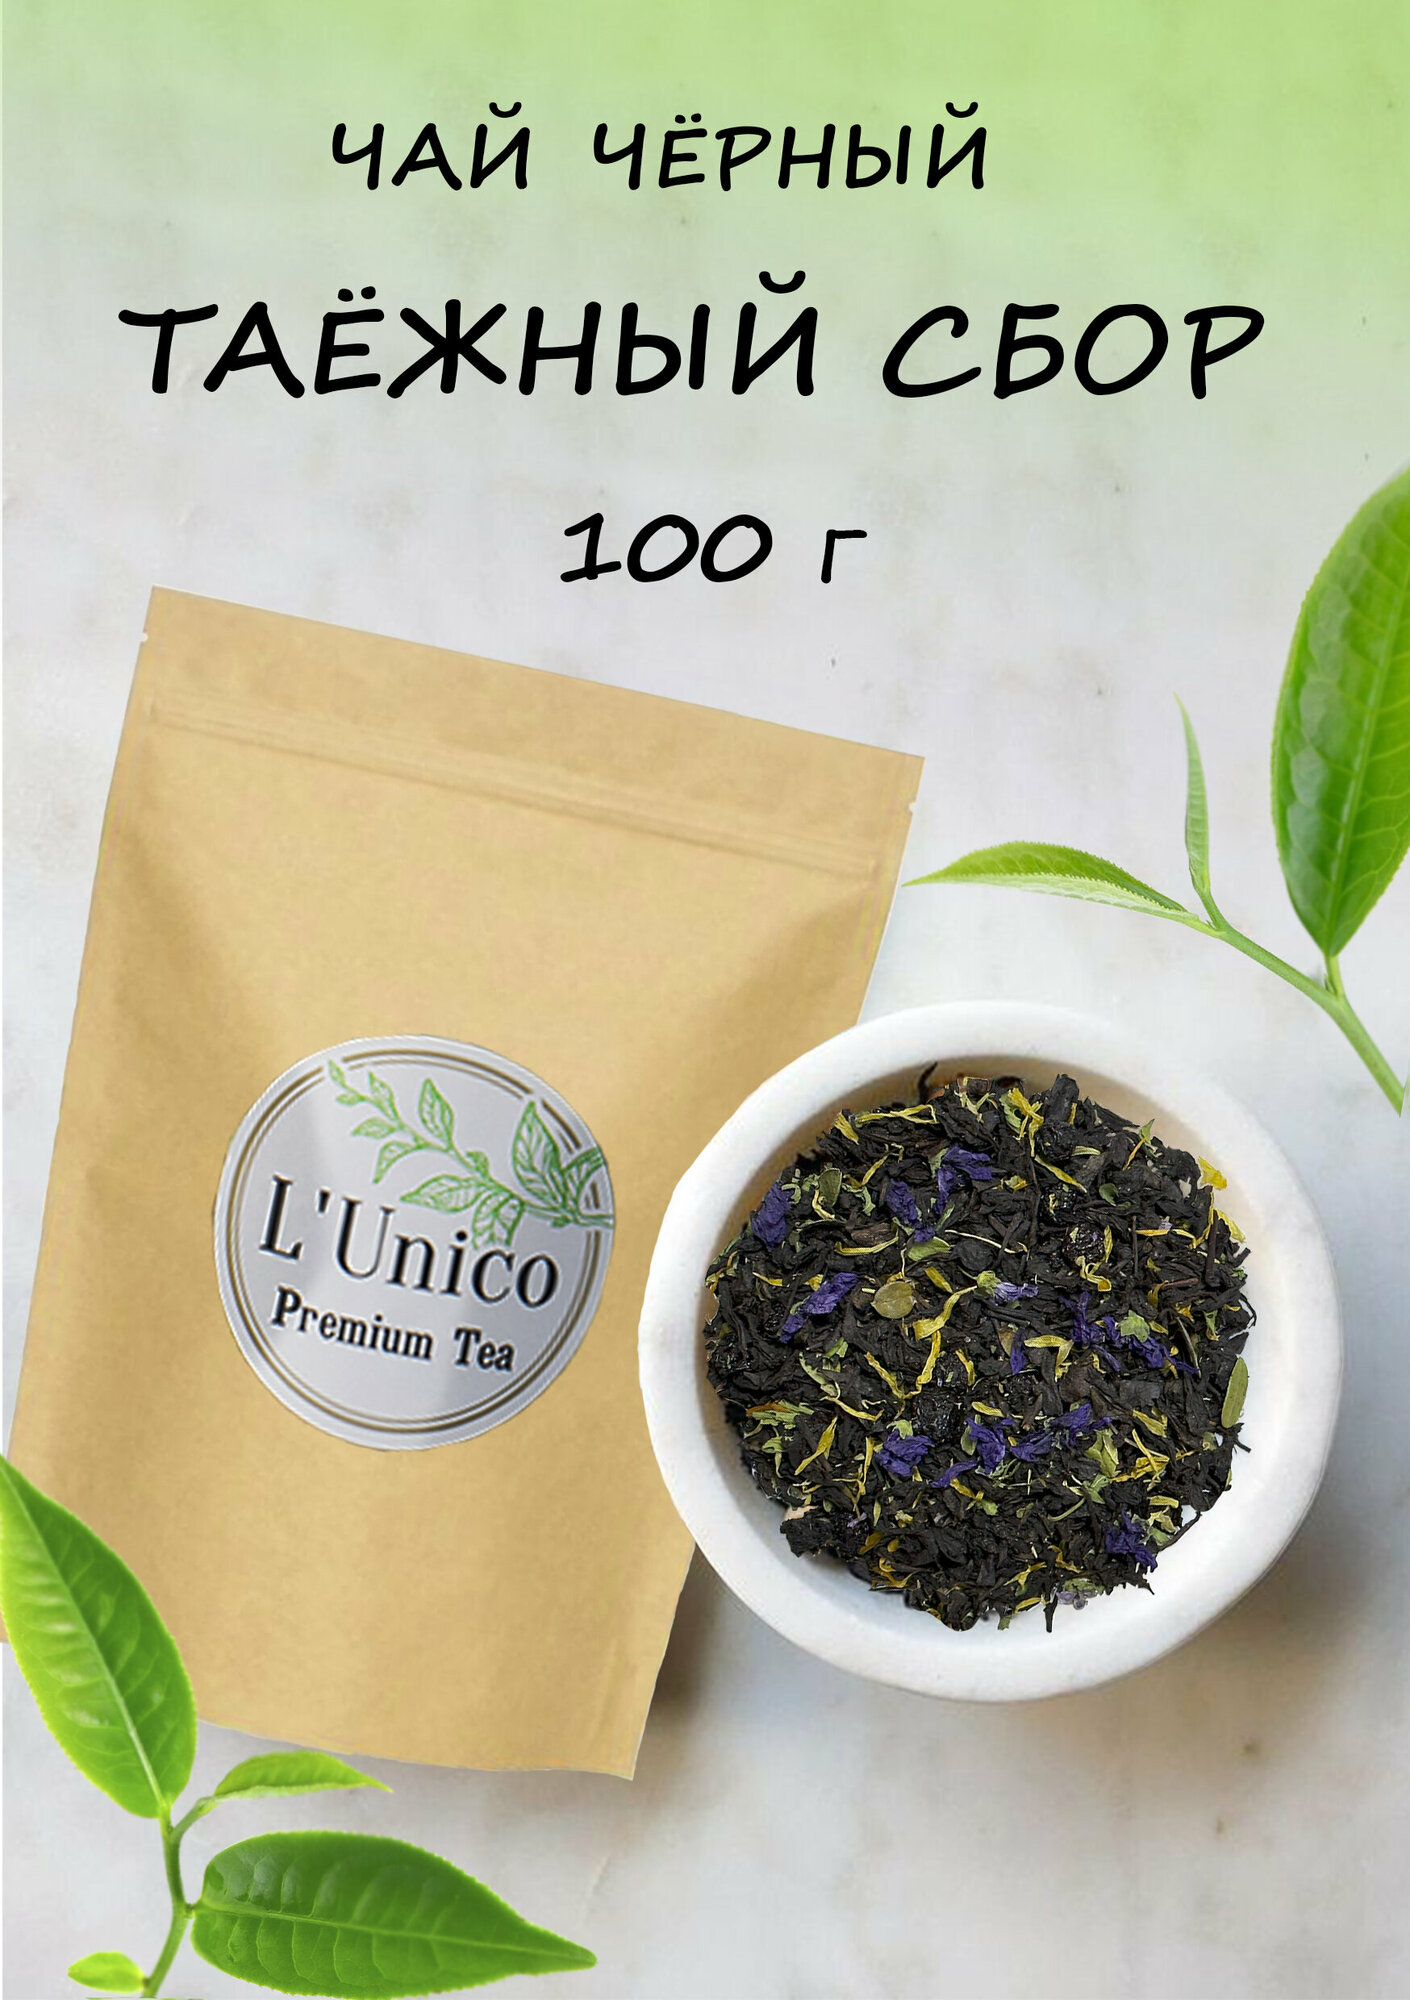 чай черный листовой с добавками Таёжный ароматизированный с ягодами и травами - фотография № 1